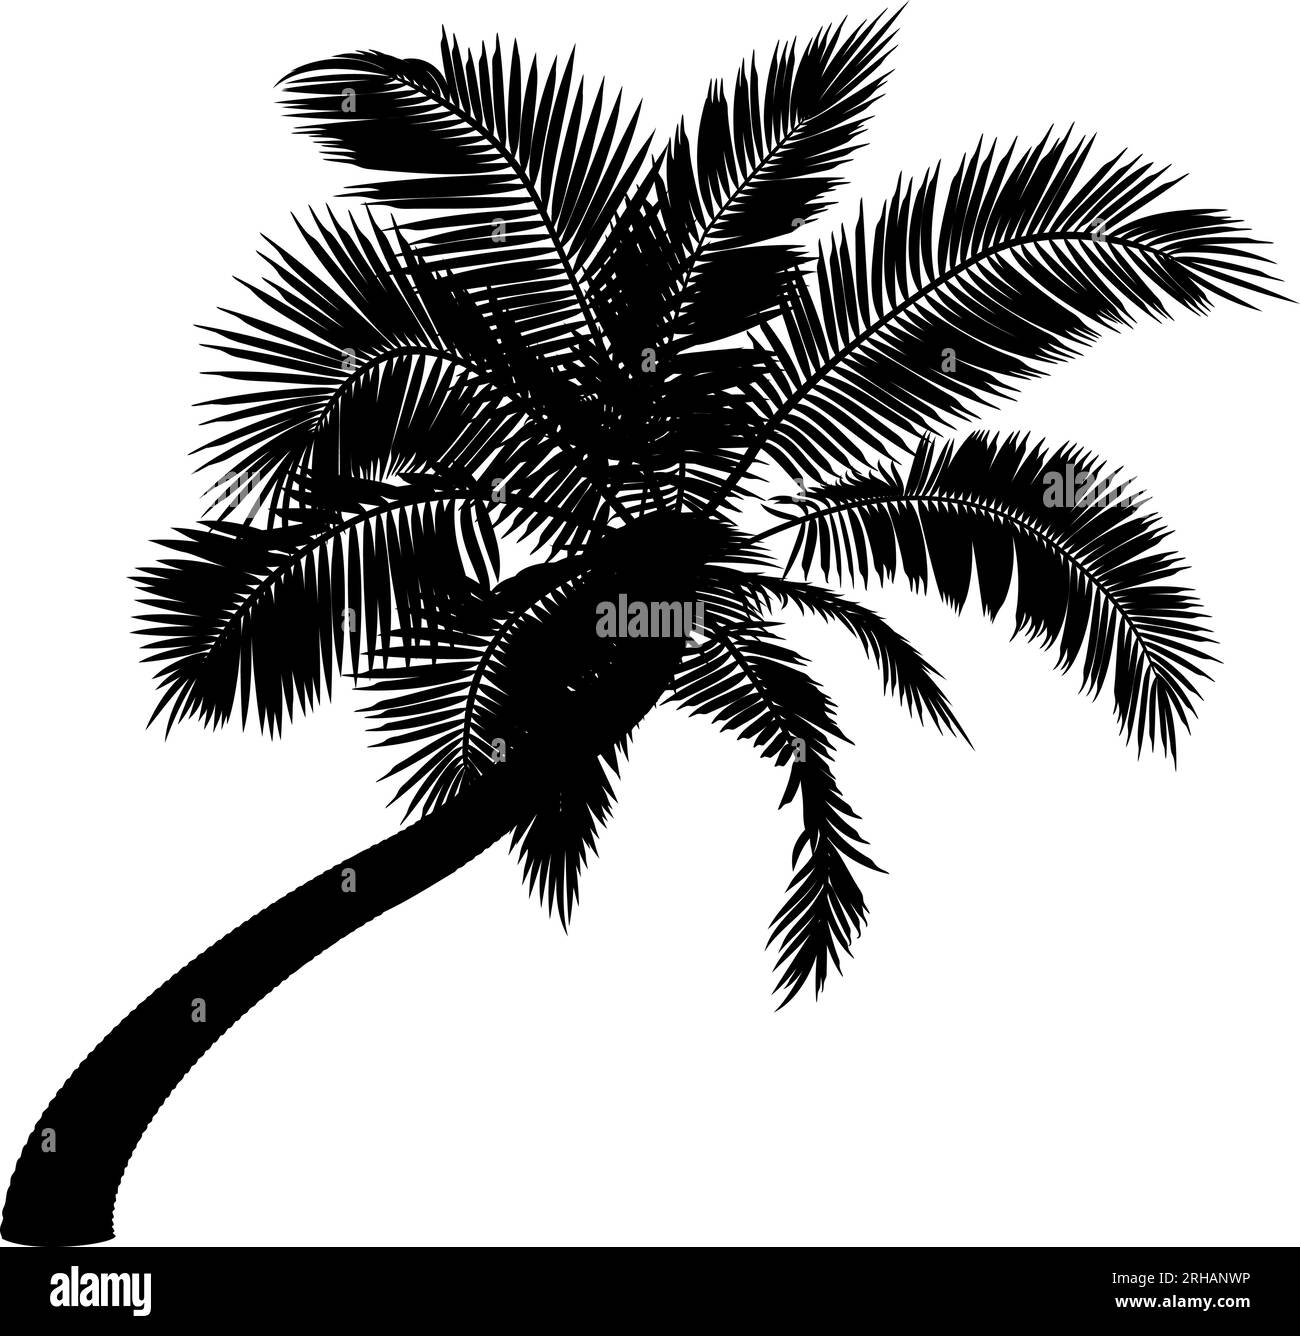 Forma de palmera de coco doblada. Ilustración vectorial de palmera inclinada. Imagen del tronco de la palmera tropical, follaje, ramas, hojas en vector. Ilustración del Vector